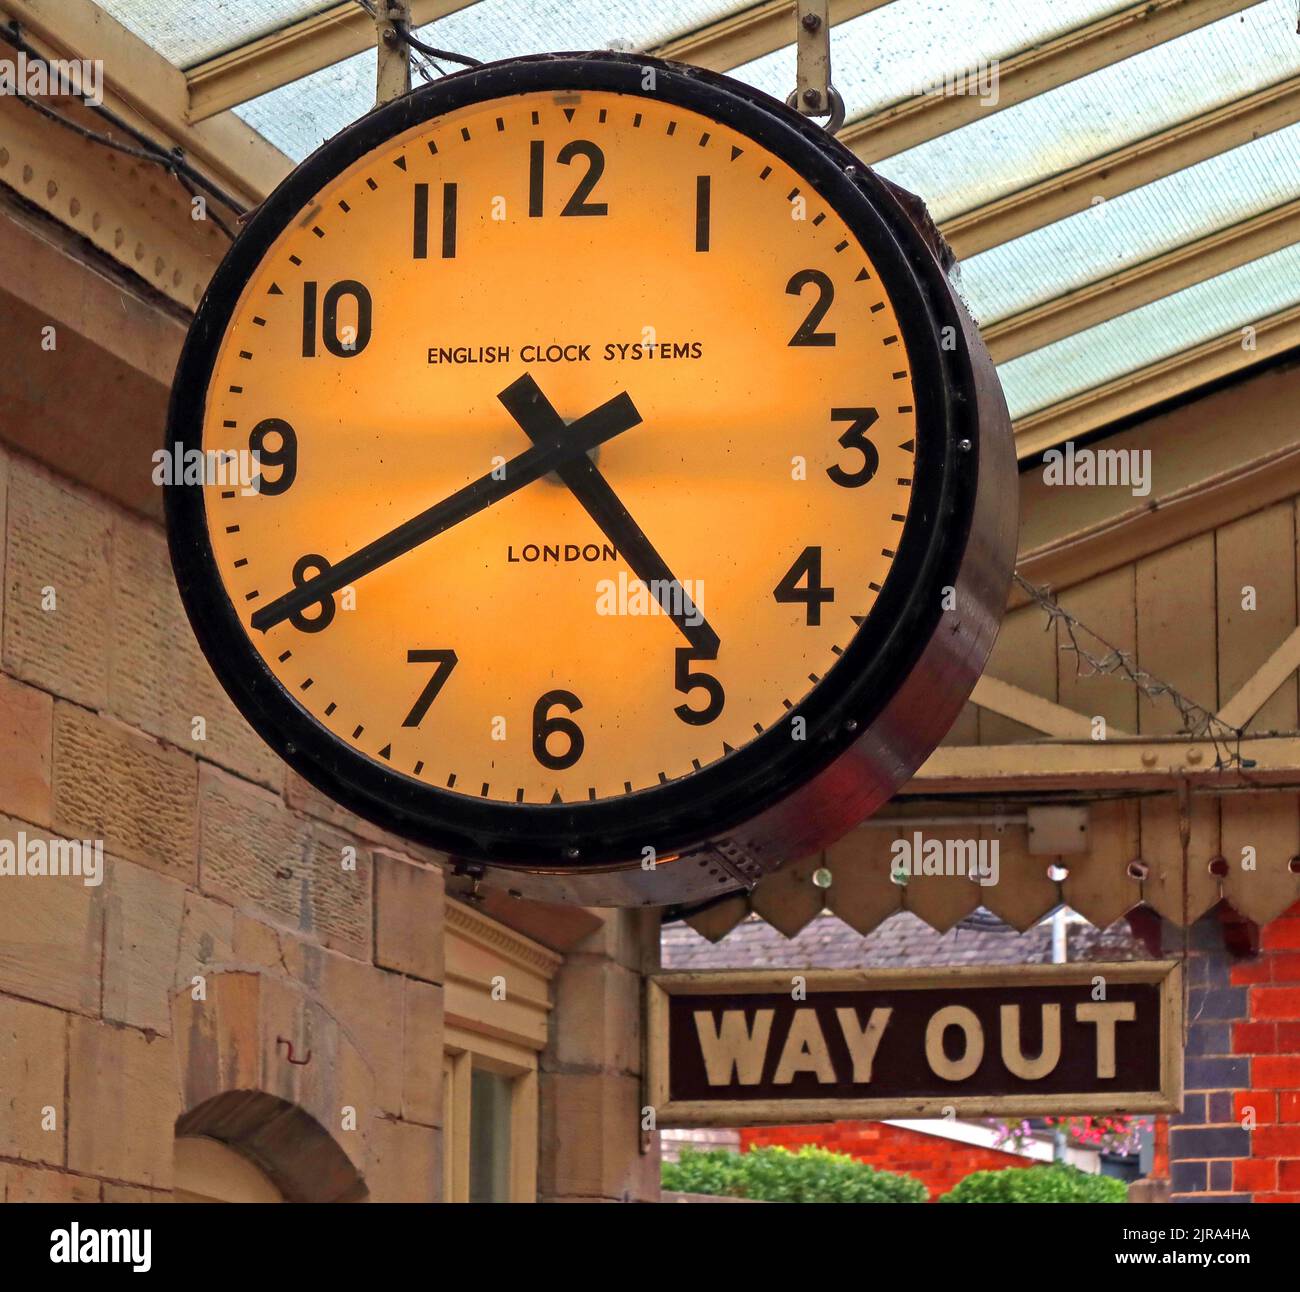 Llangollen orologio di stazione illuminato, sistemi di orologio inglese, Londra, Galles del Nord, Regno Unito, LL20 8SN Foto Stock